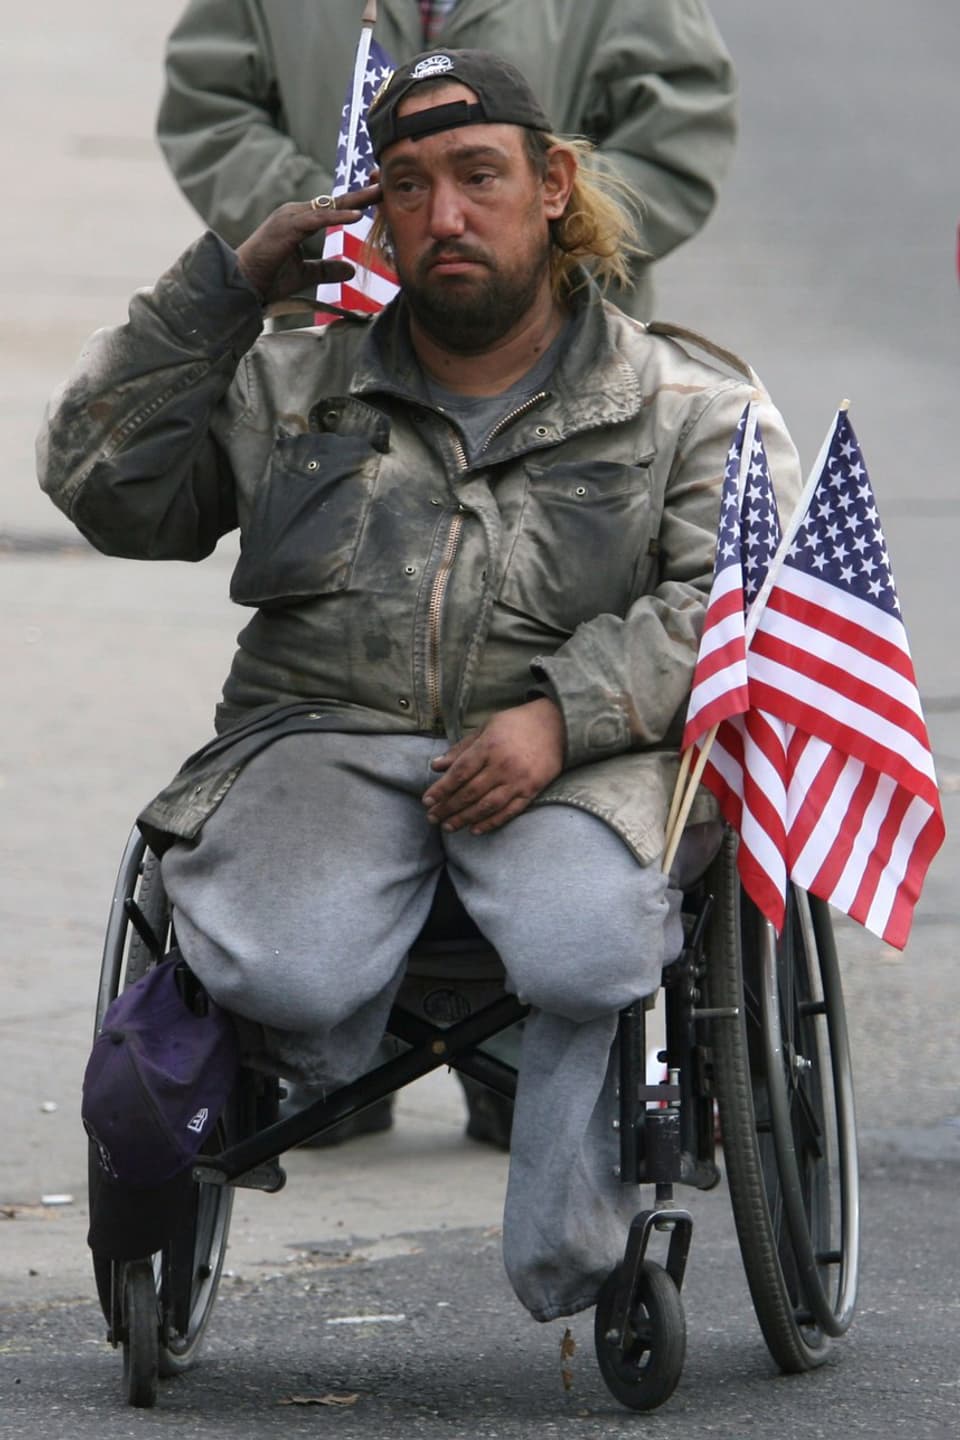 Ein Soldat auf einem Rollstuhl sitzend, beide Beine fehlen, salutiert.